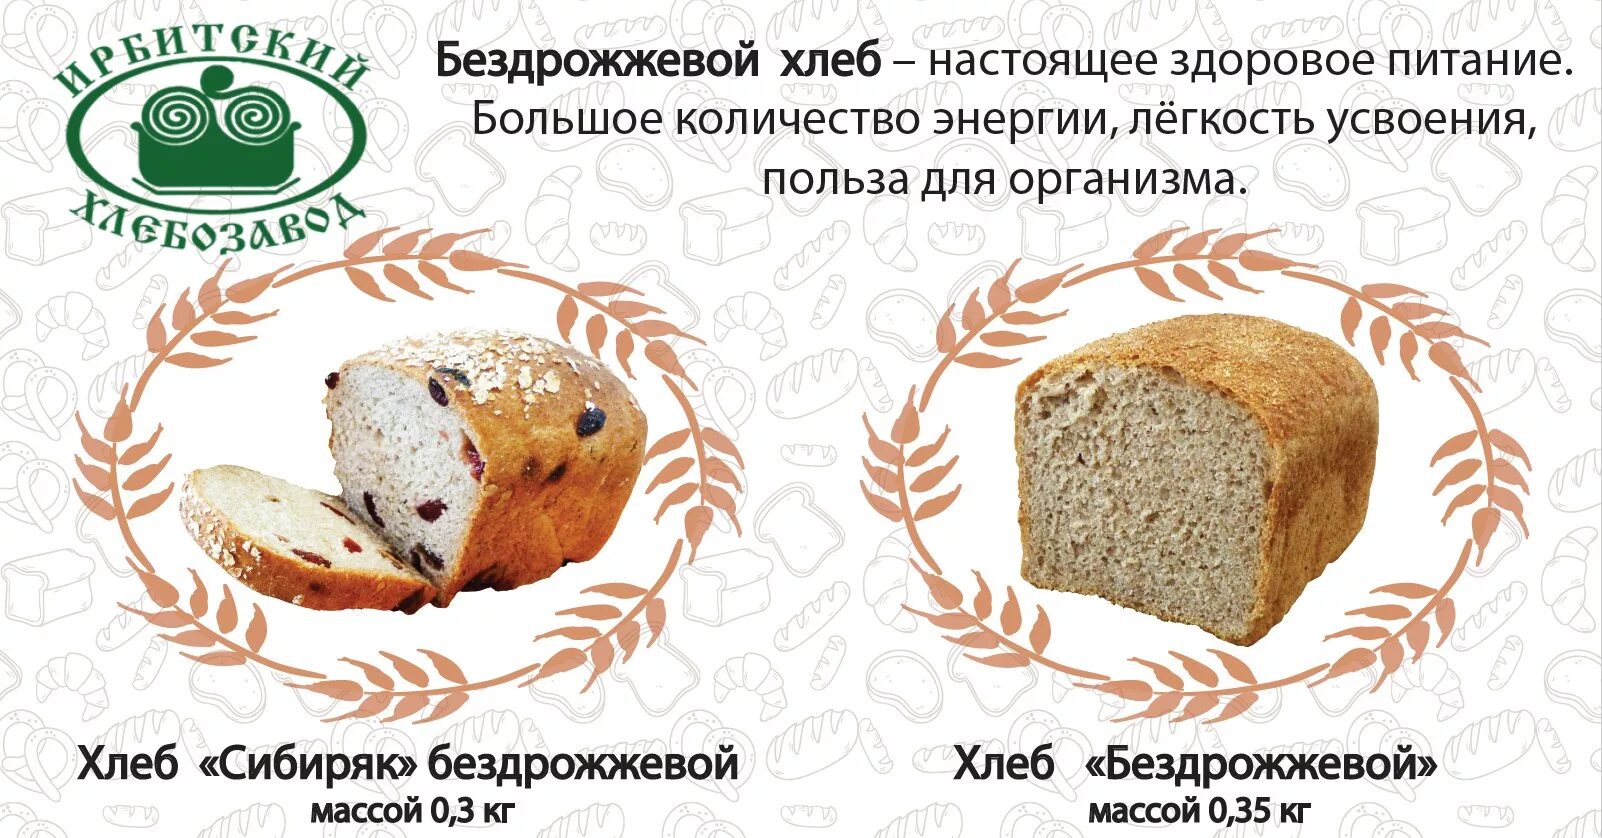 Польза бездрожжевого хлеба. Бездрожжевой хлеб. Реклама хлеба. Слоганы про хлеб. Реклама бездрожжевого хлеба.